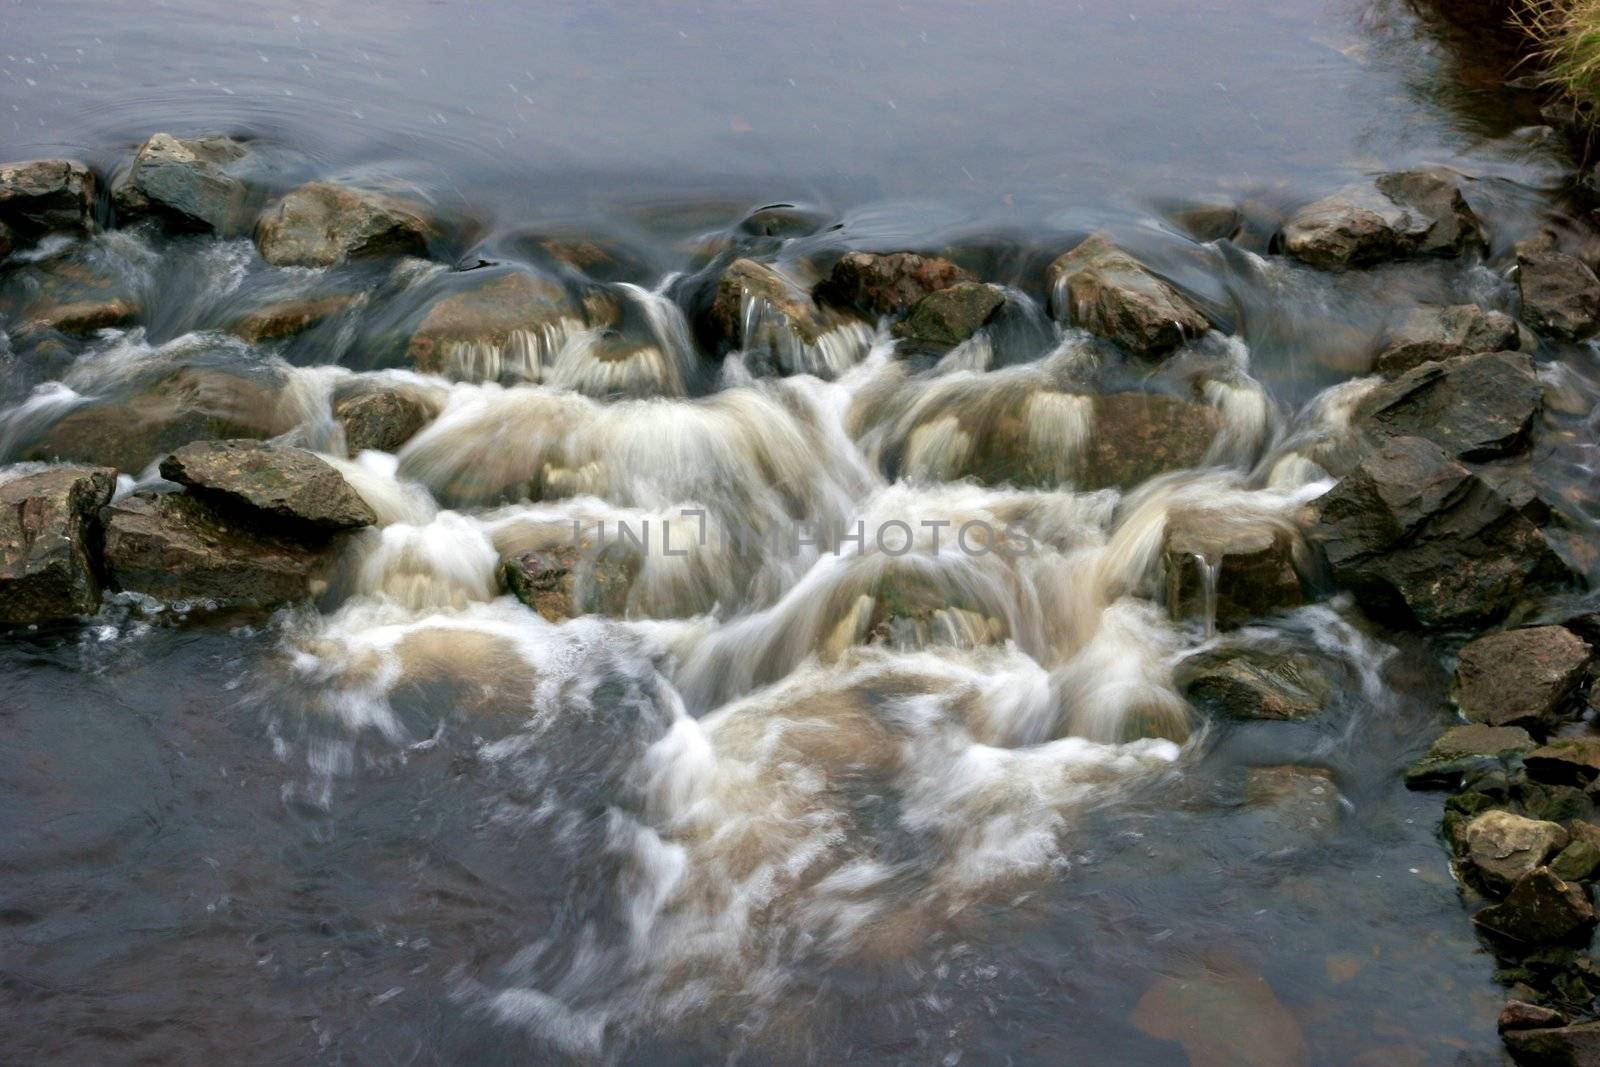 River stones by Bildehagen